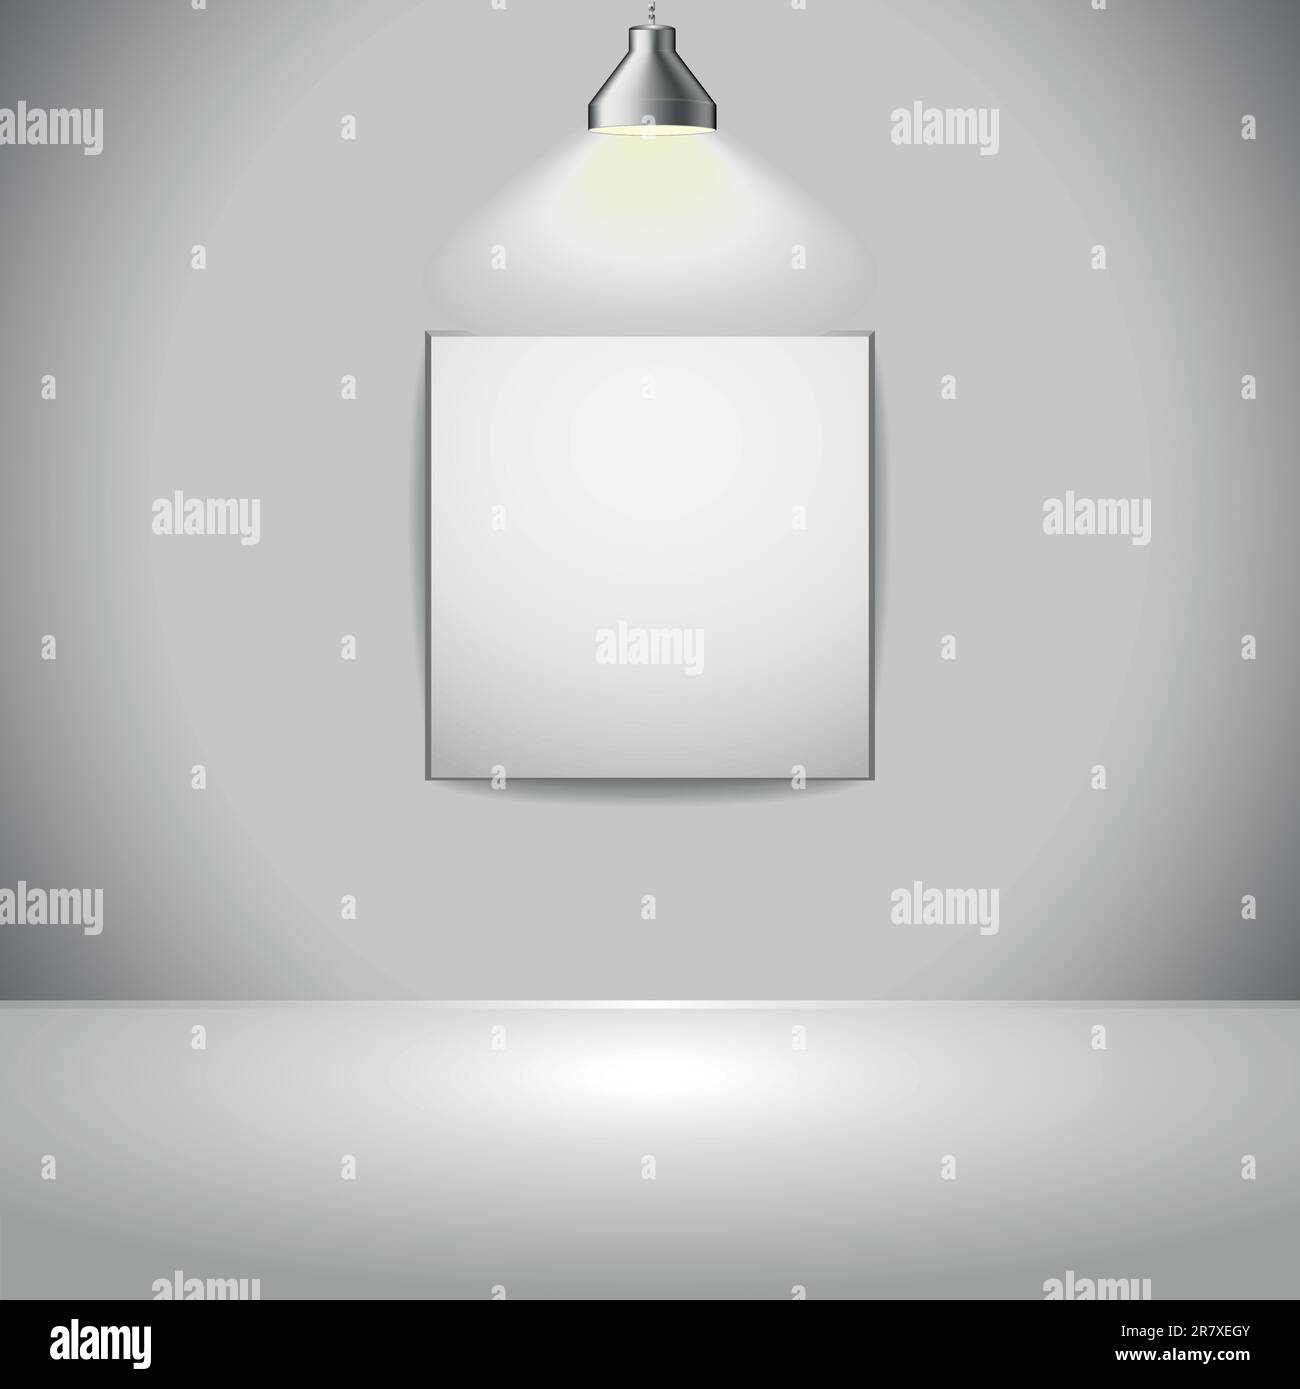 immagine di un riquadro di presentazione con sorgente luminosa dall'alto, vettore eps 8 Illustrazione Vettoriale